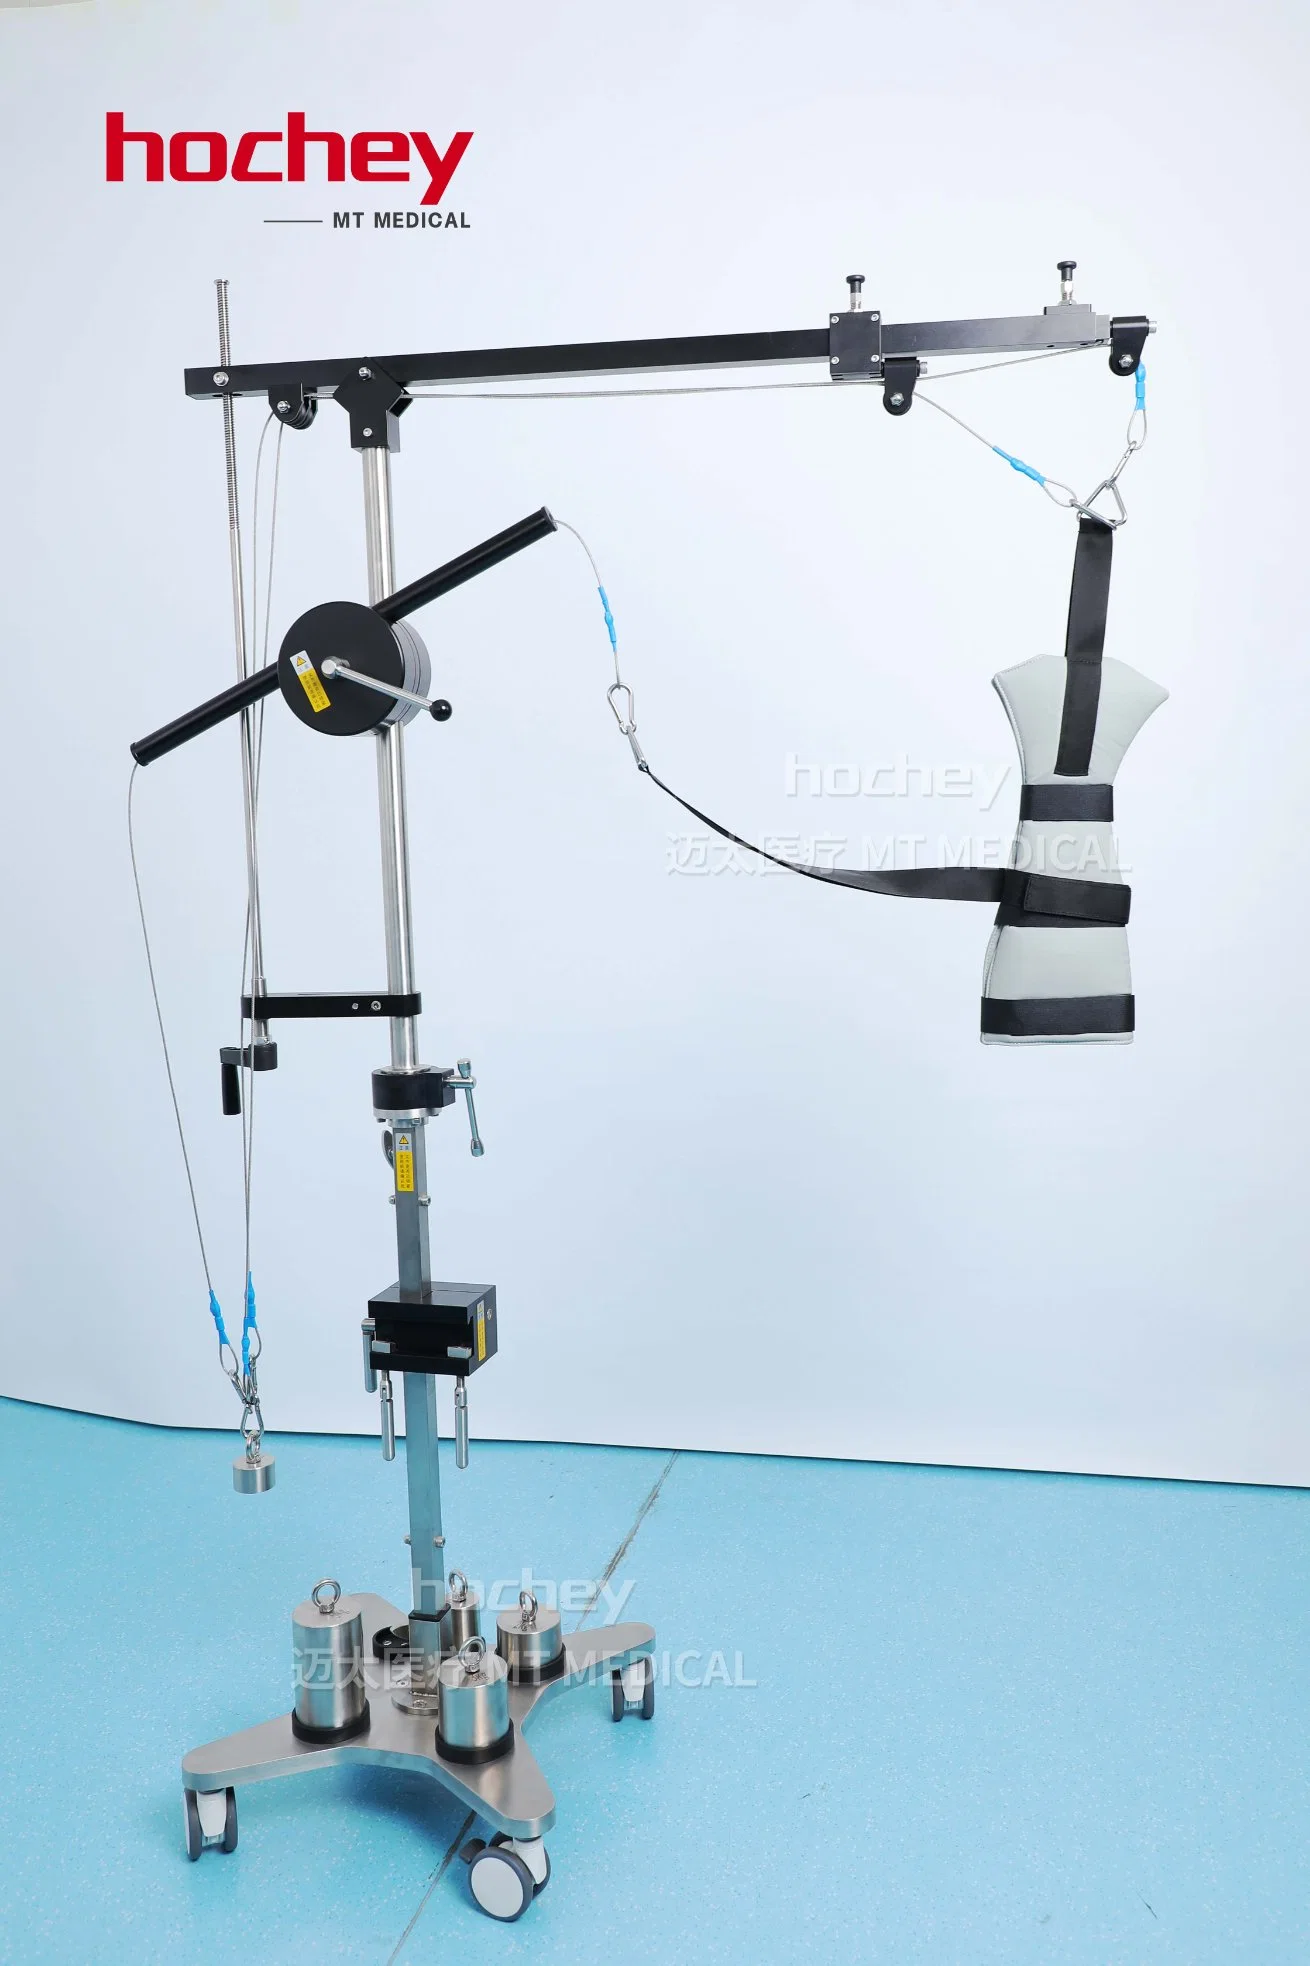 Mt Medical Surgical Bed Equipment Acero inoxidable Ortopedia articulación del hombro Artroscopia del bastidor de tracción